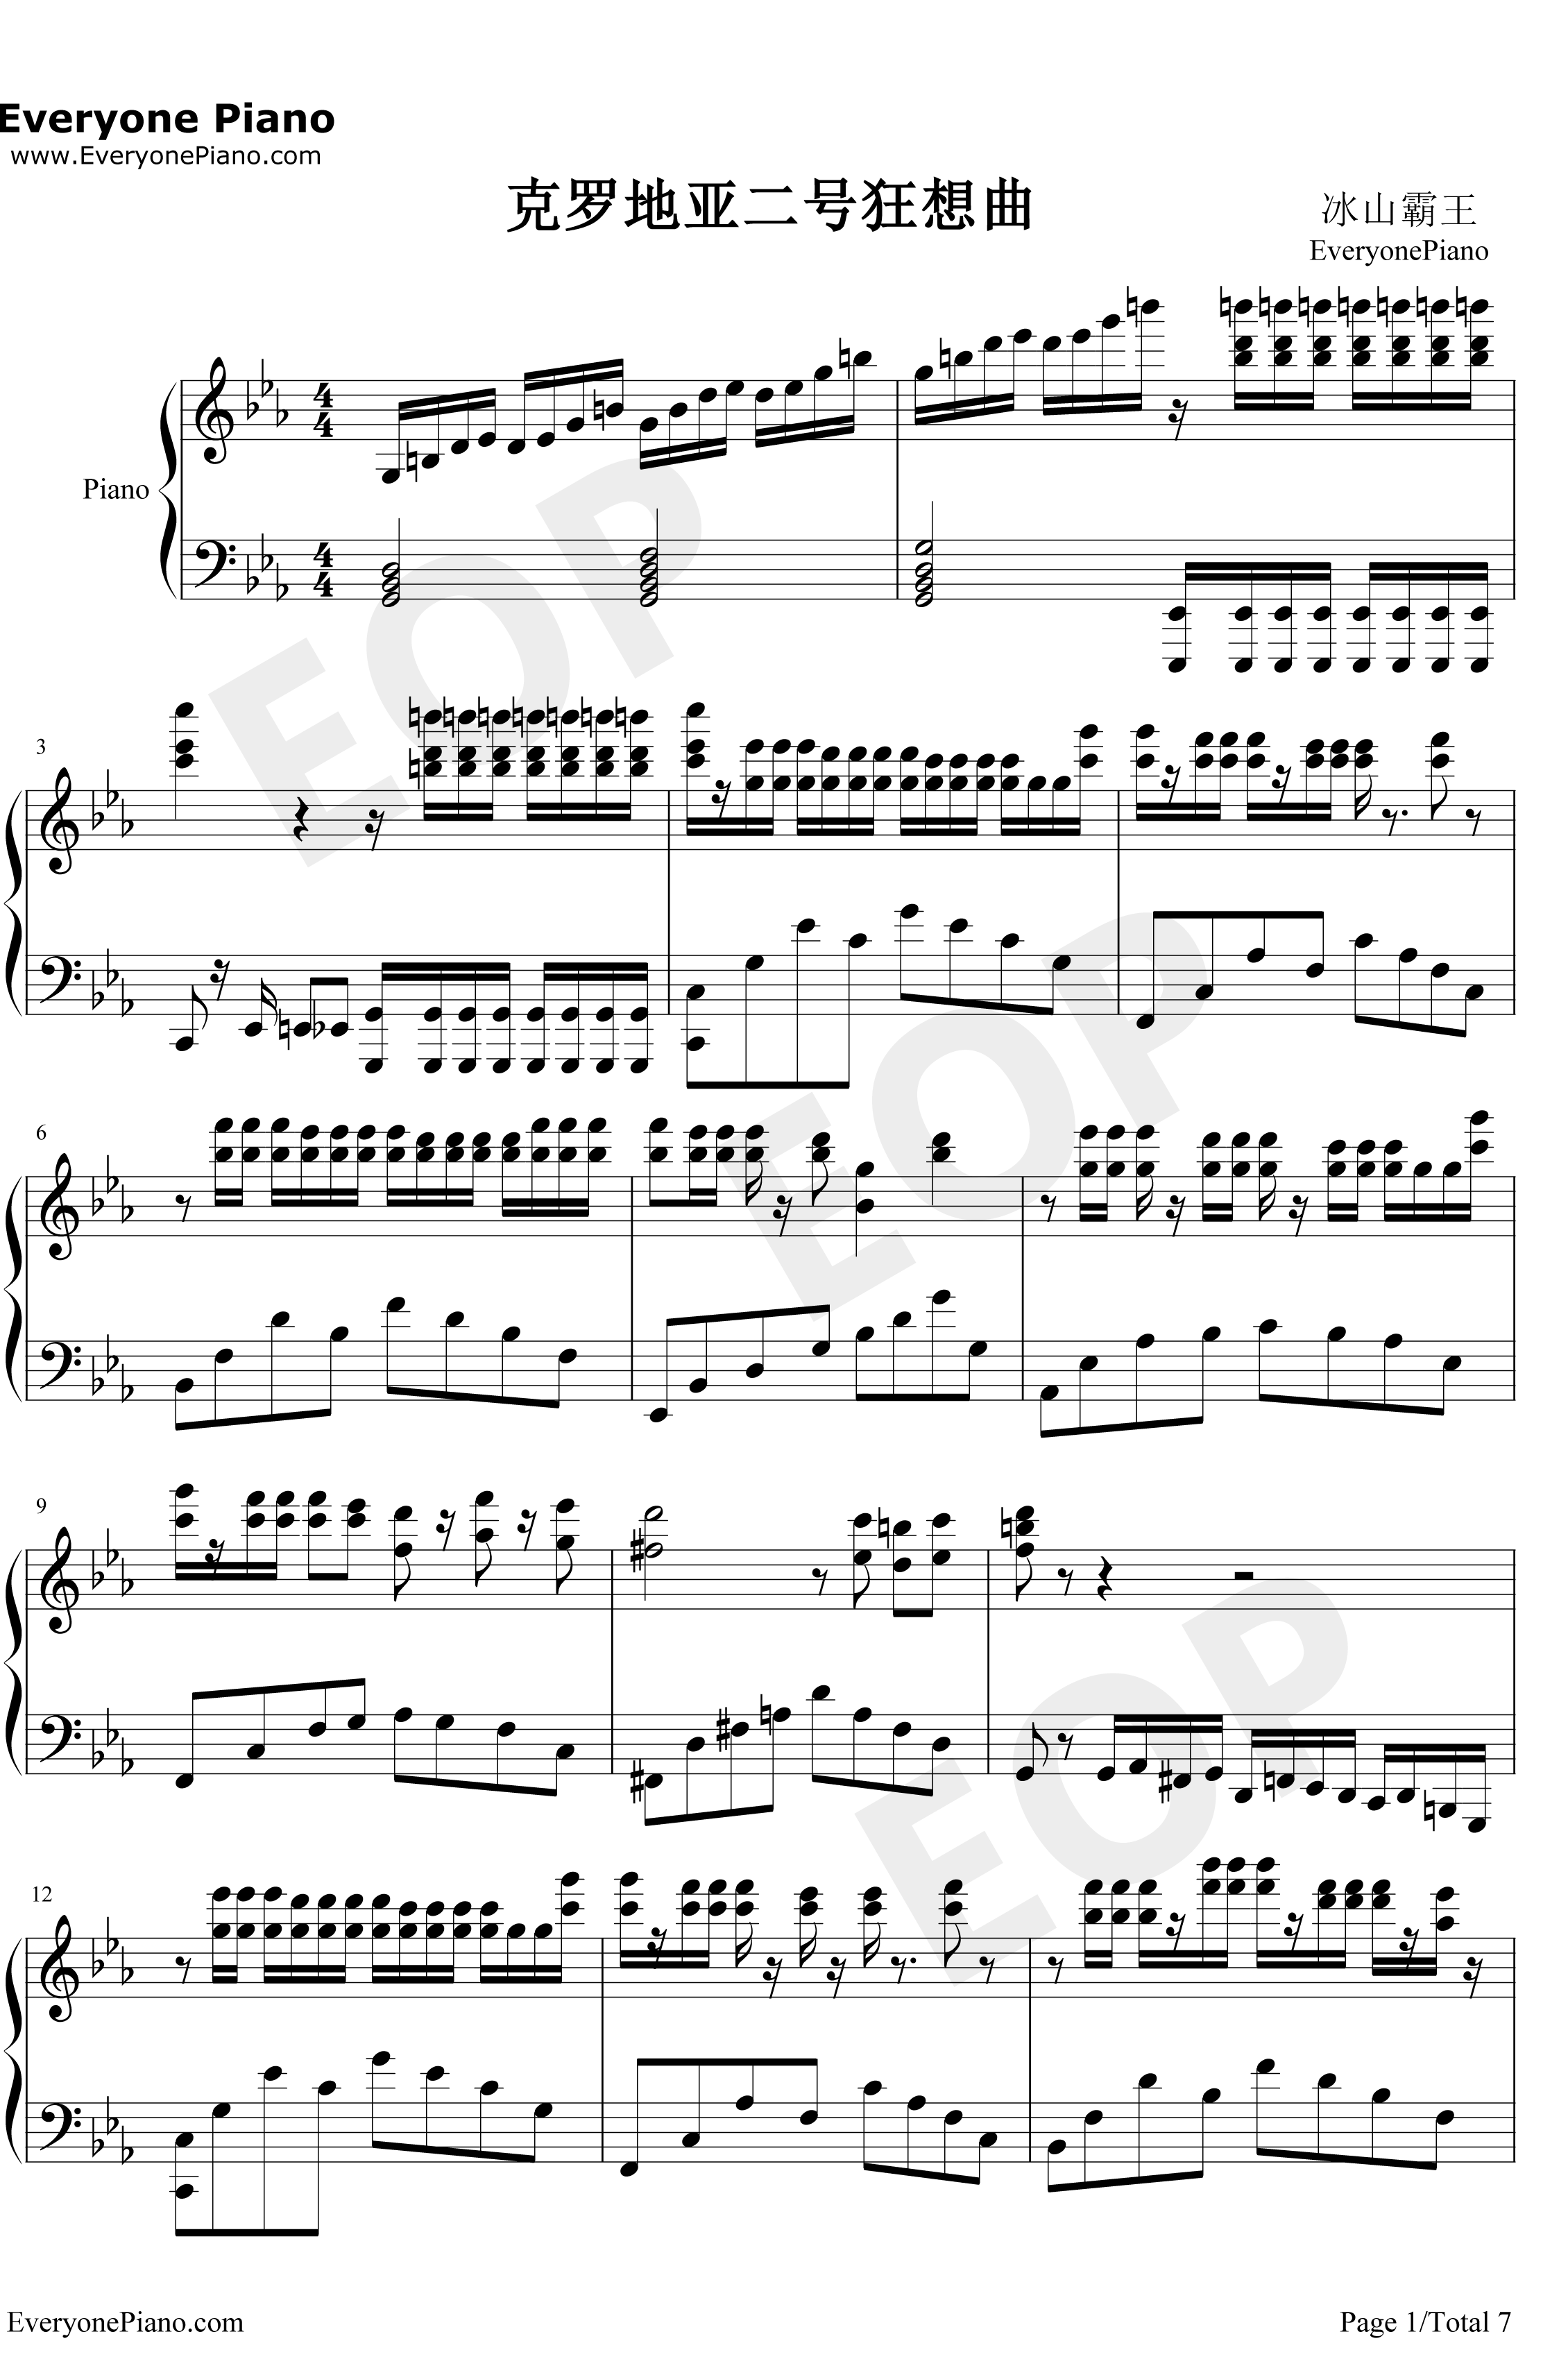 克罗地亚第二号狂想曲钢琴谱-ELLOCZ-克罗地亚第二号狂想曲1